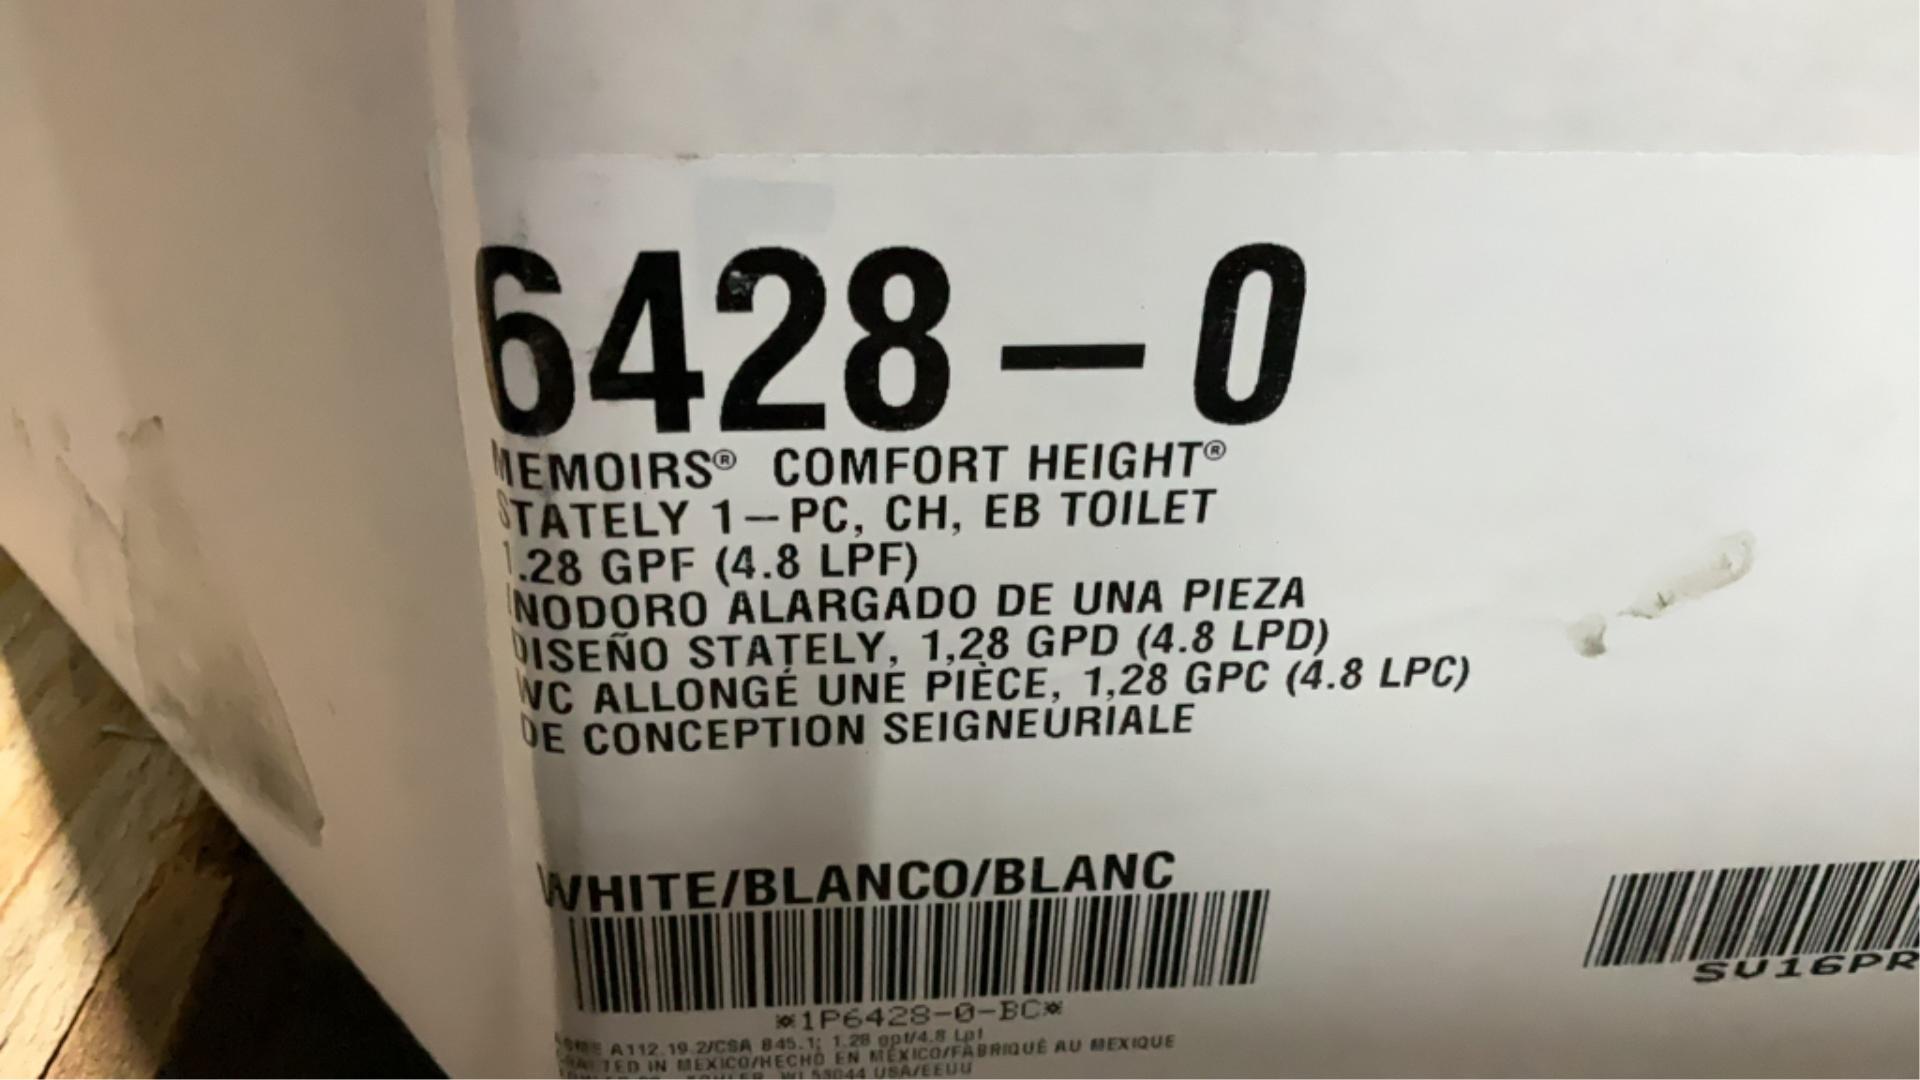 Kohler One Piece Toilet 6428-0